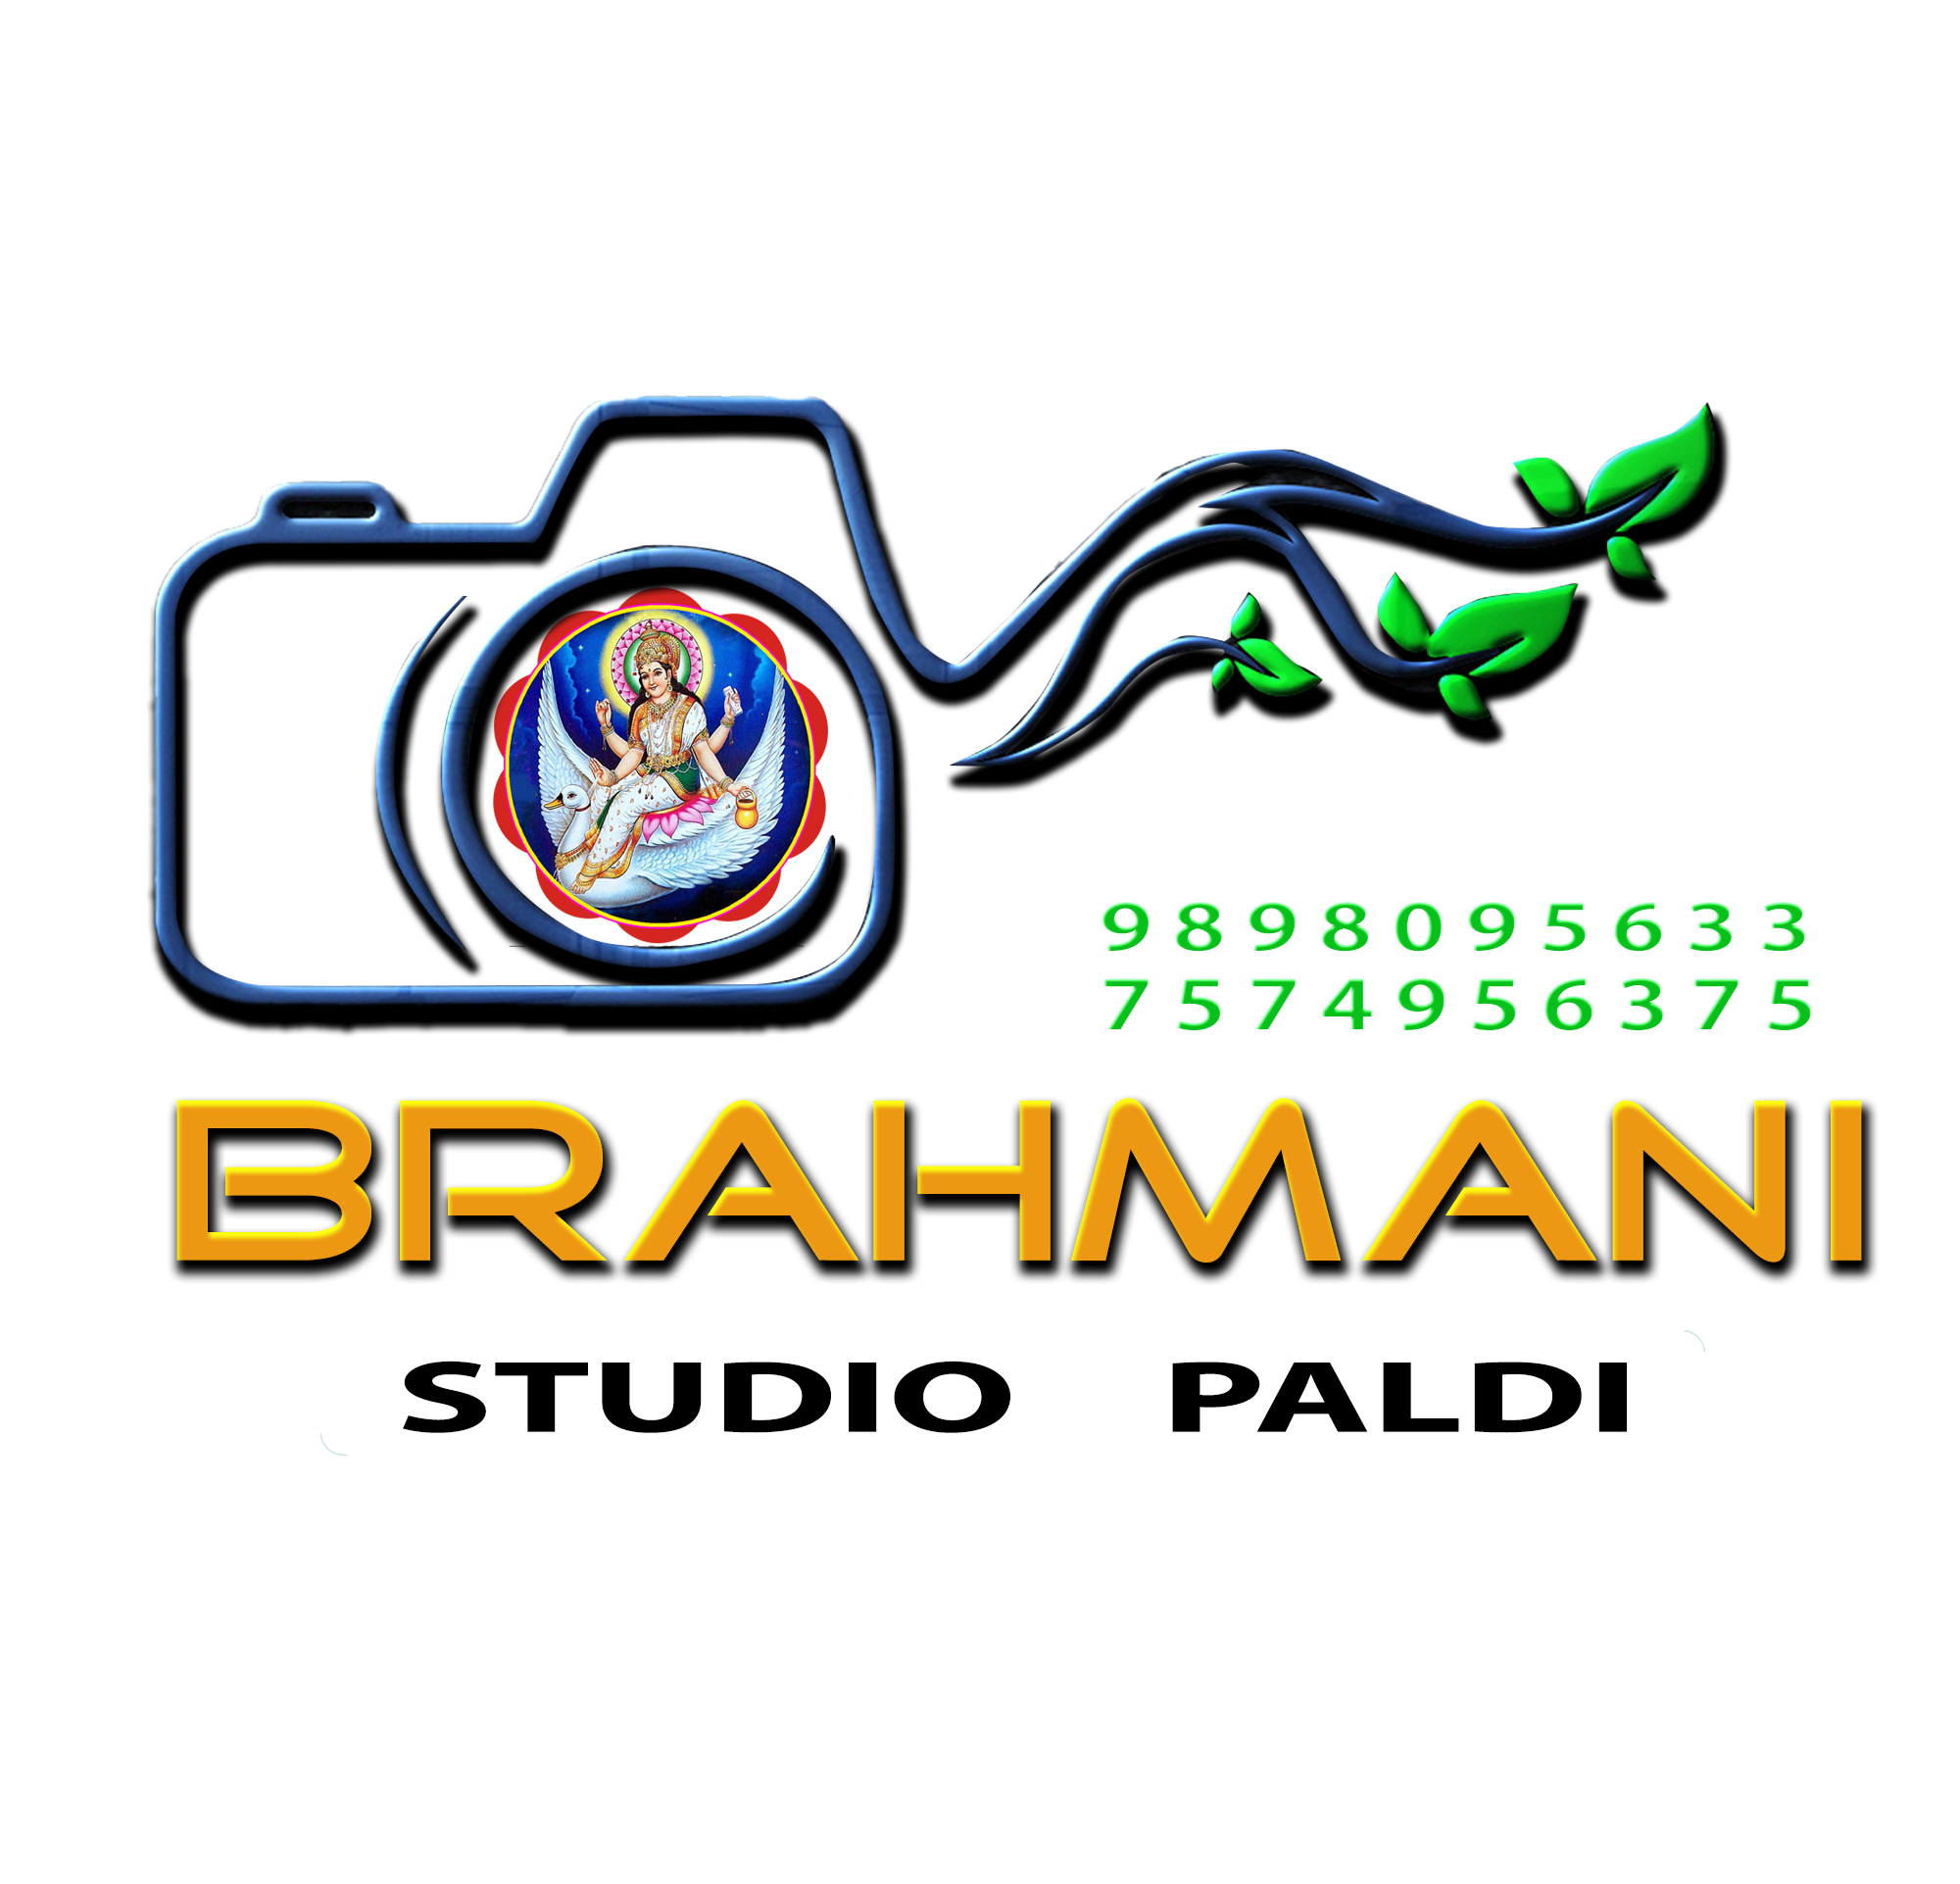 Brahmani Studio Paldi